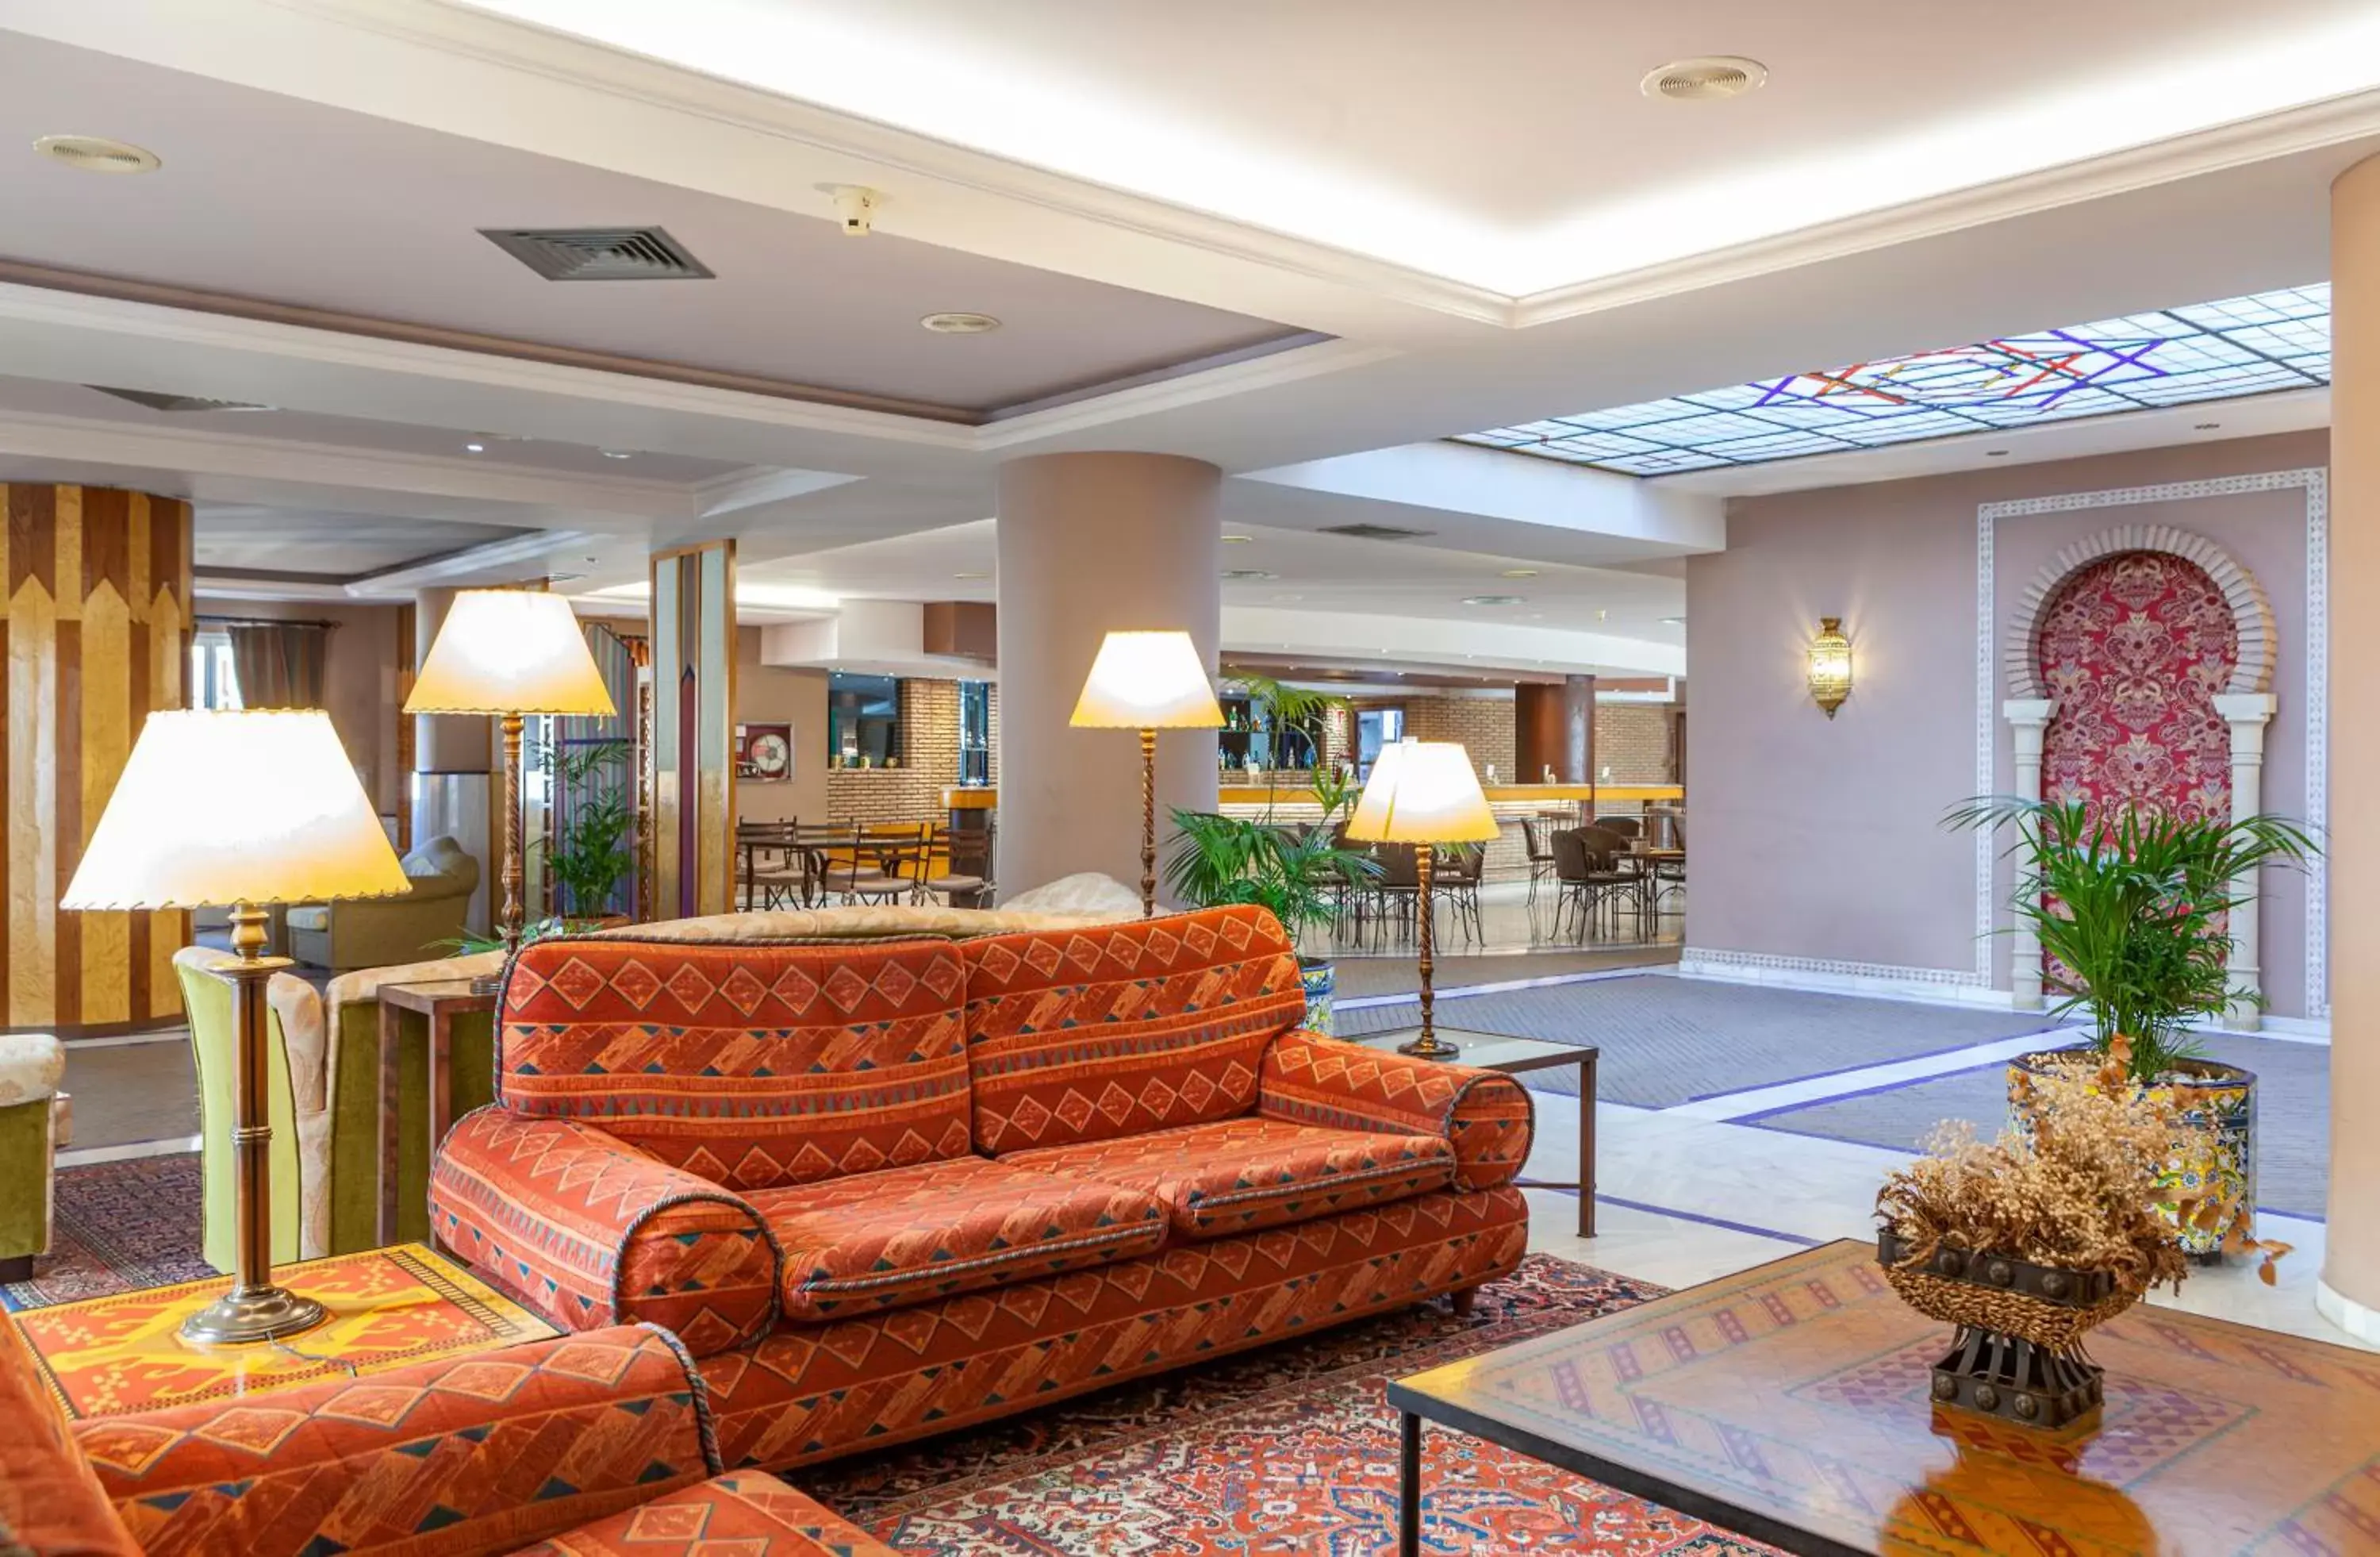 Lobby or reception, Lobby/Reception in Macia Alfaros